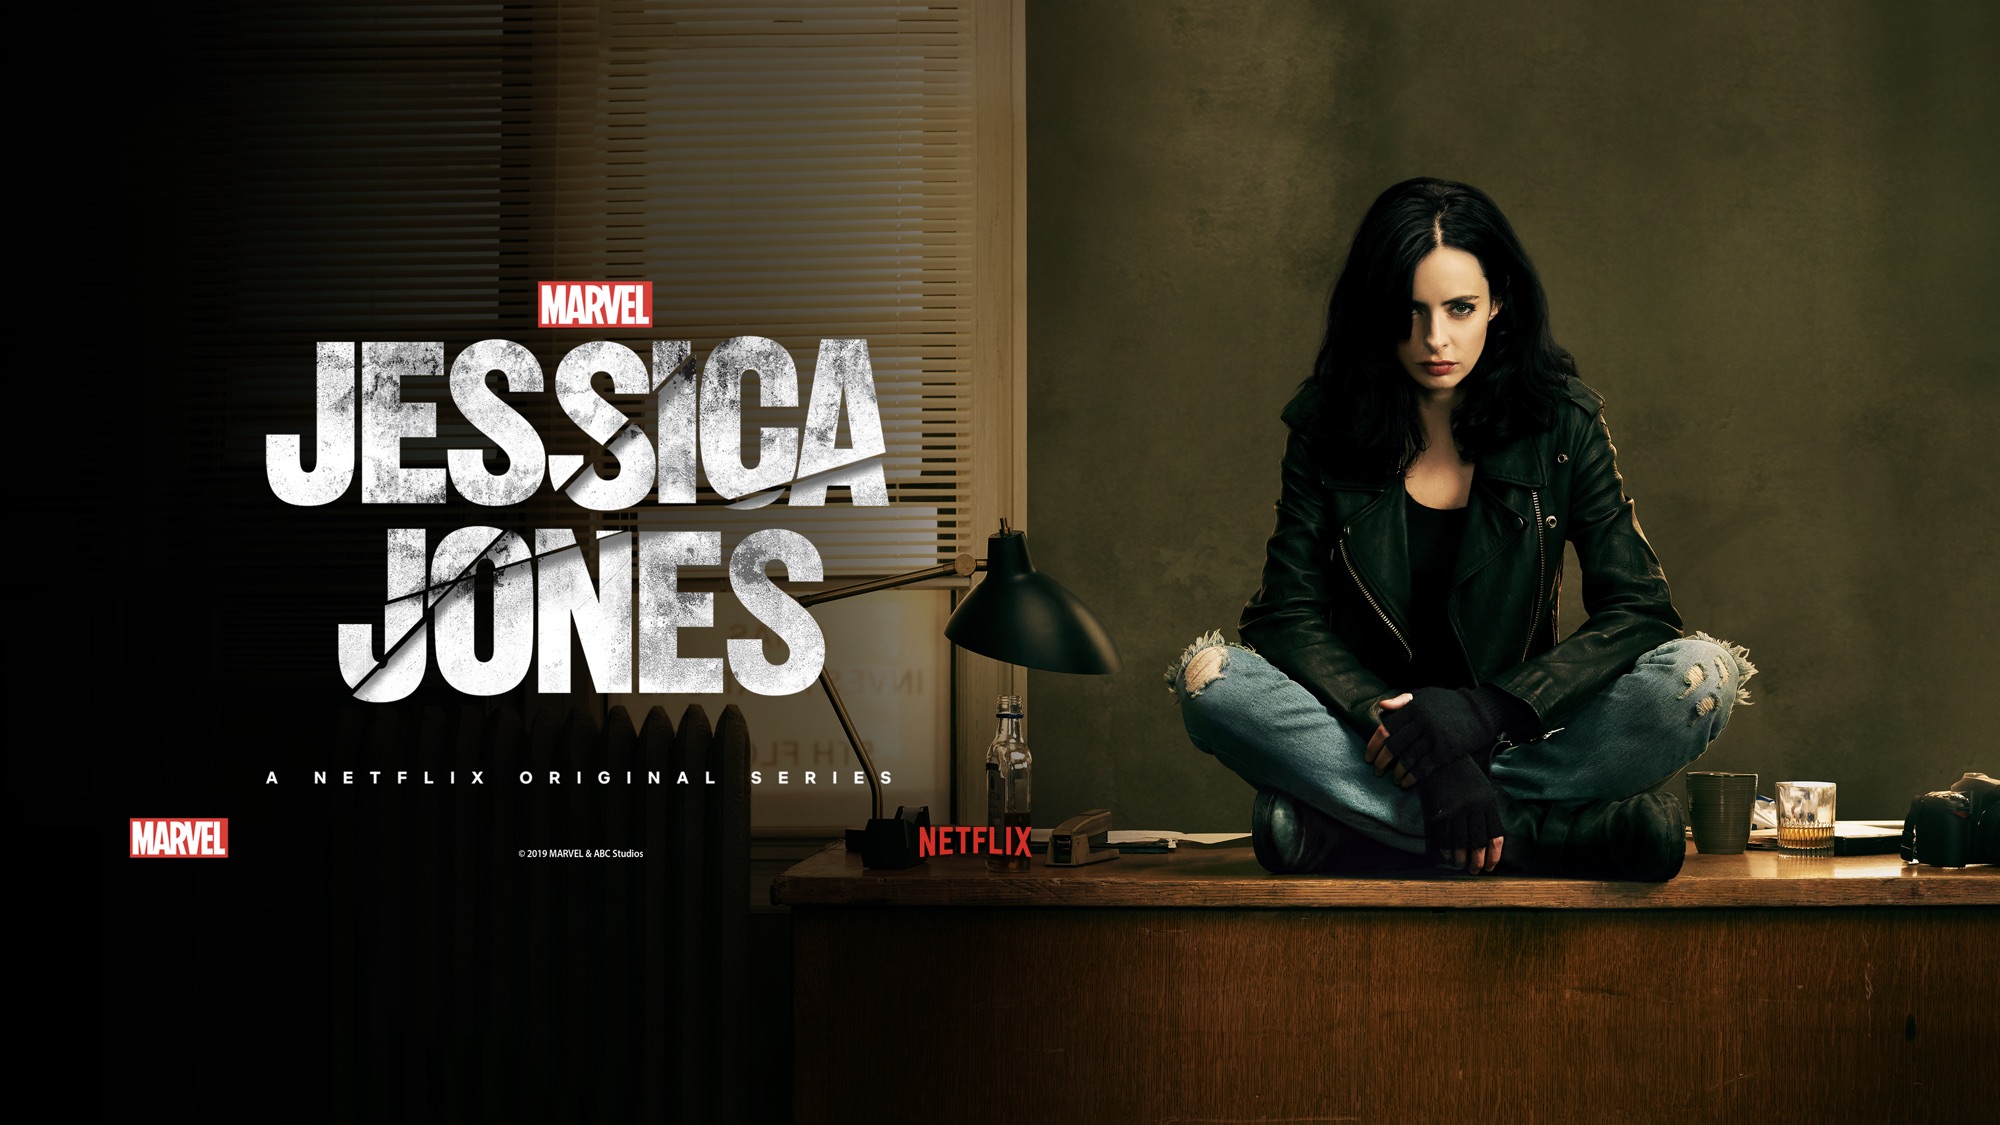 Marvel Jessica Jones